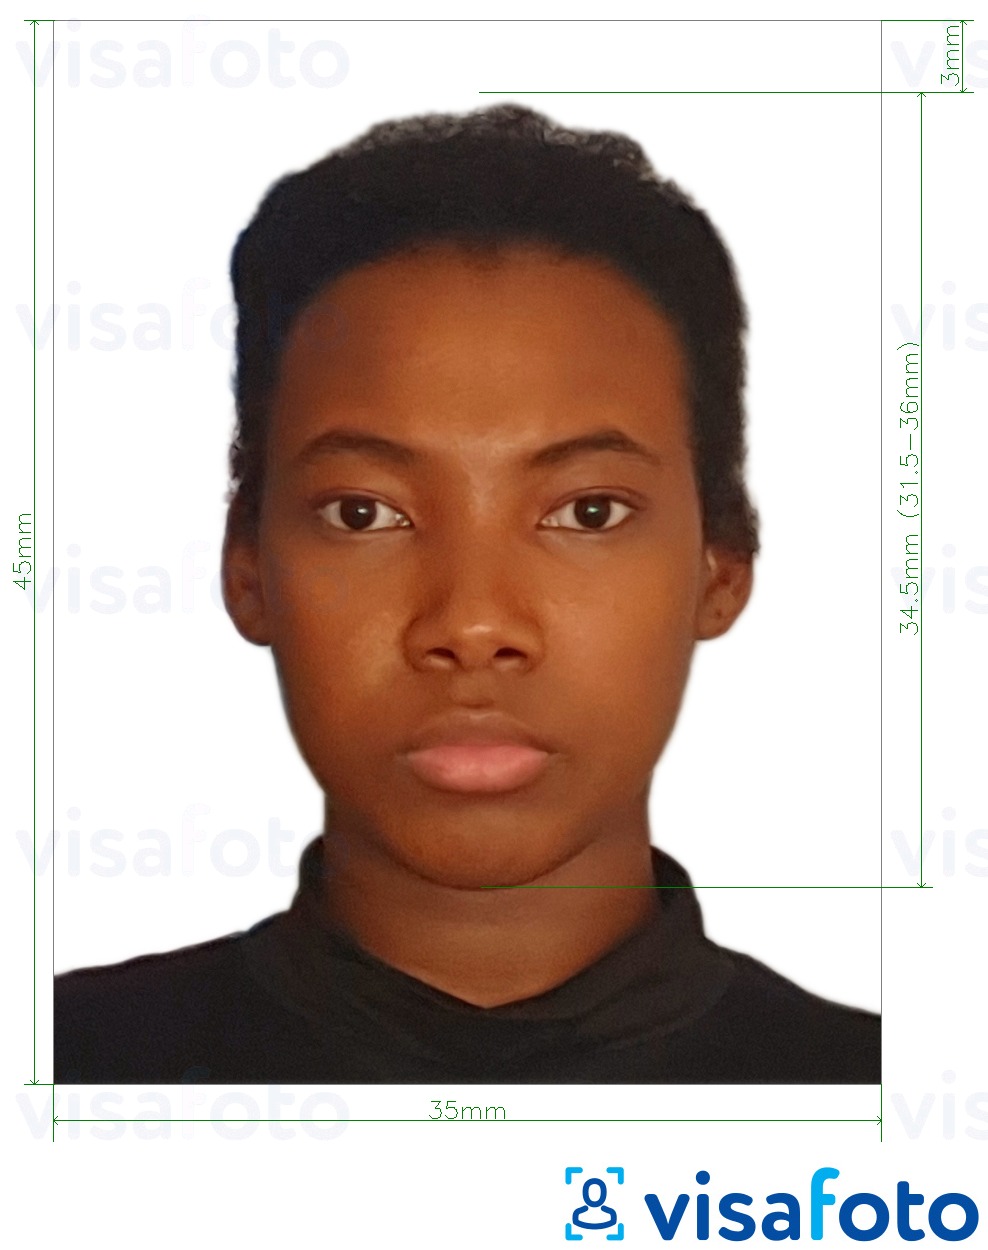 Contoh foto untuk Nigeria visa 3.5x4.5 cm (35x45 mm) dengan spesifikasi saiz yang tepat.